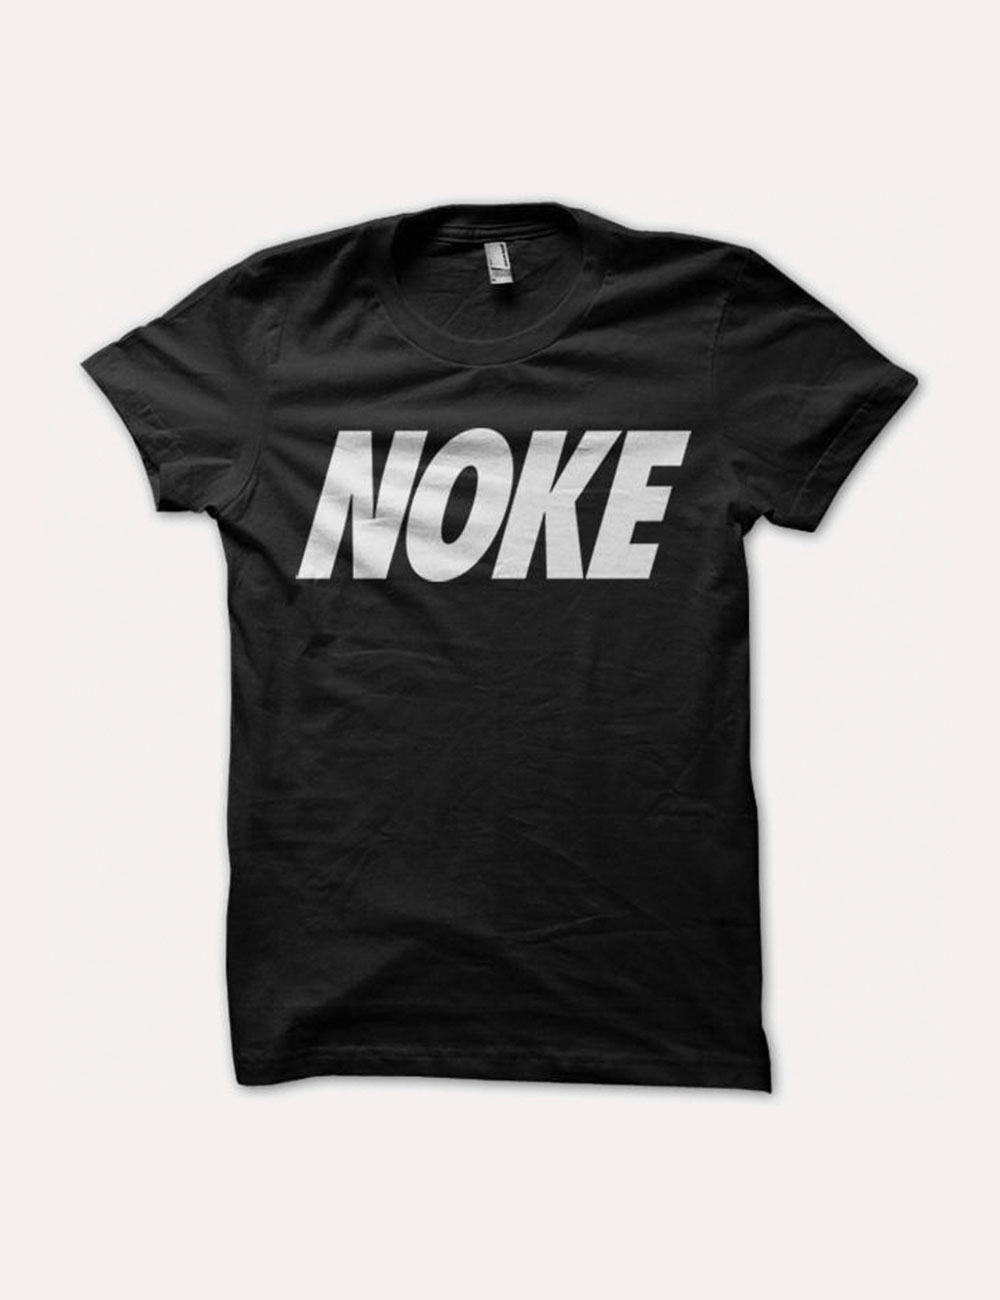 Roanoke Made - Merch - Noke T-Shirt - Black